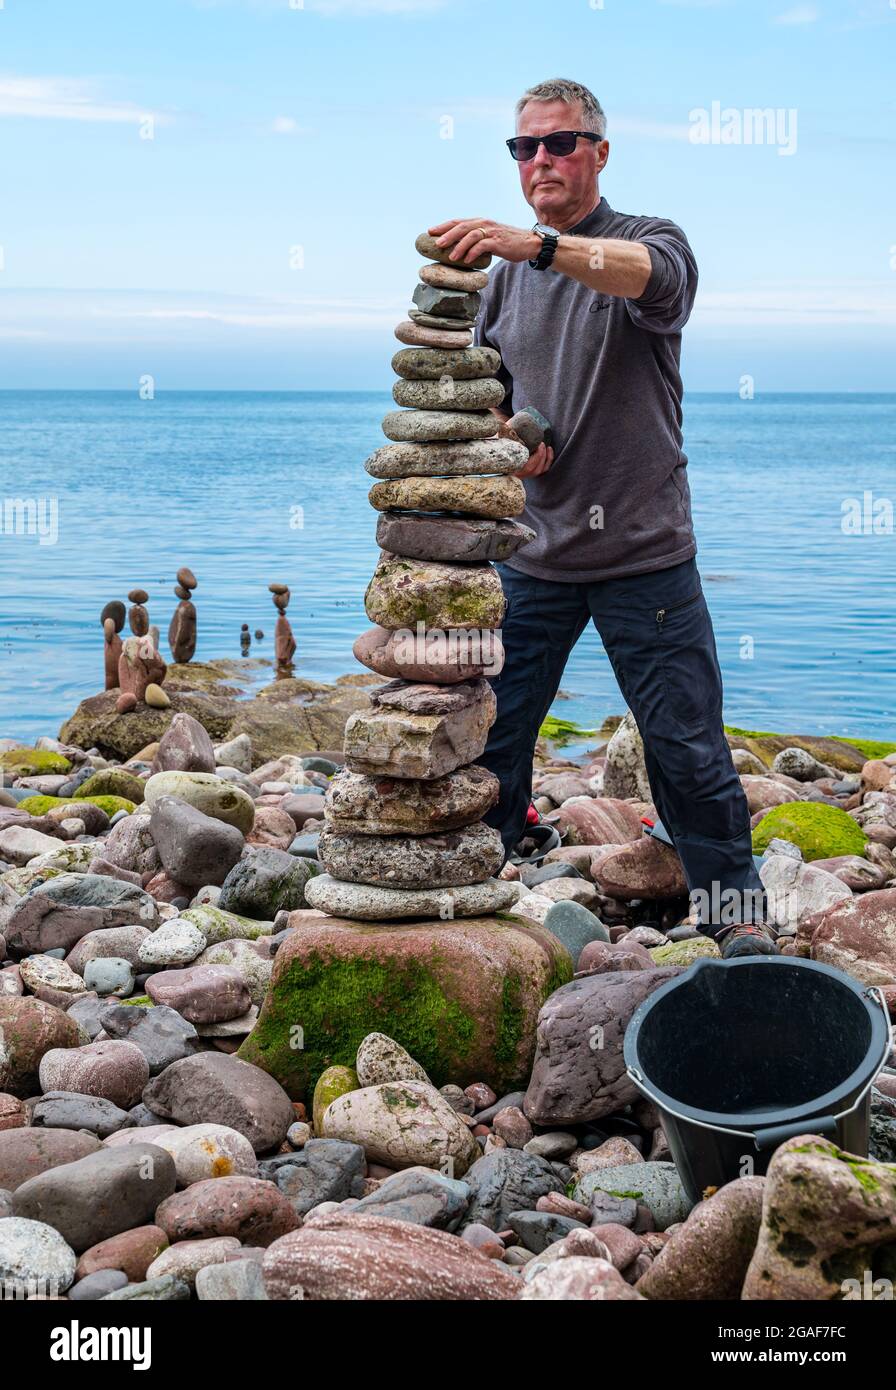 Jonathon Kitching stapelt Steine in einem Turm bei der European Stone Stacking Championship am Strand, Dunbar, East Lothian, Schottland, Großbritannien Stockfoto